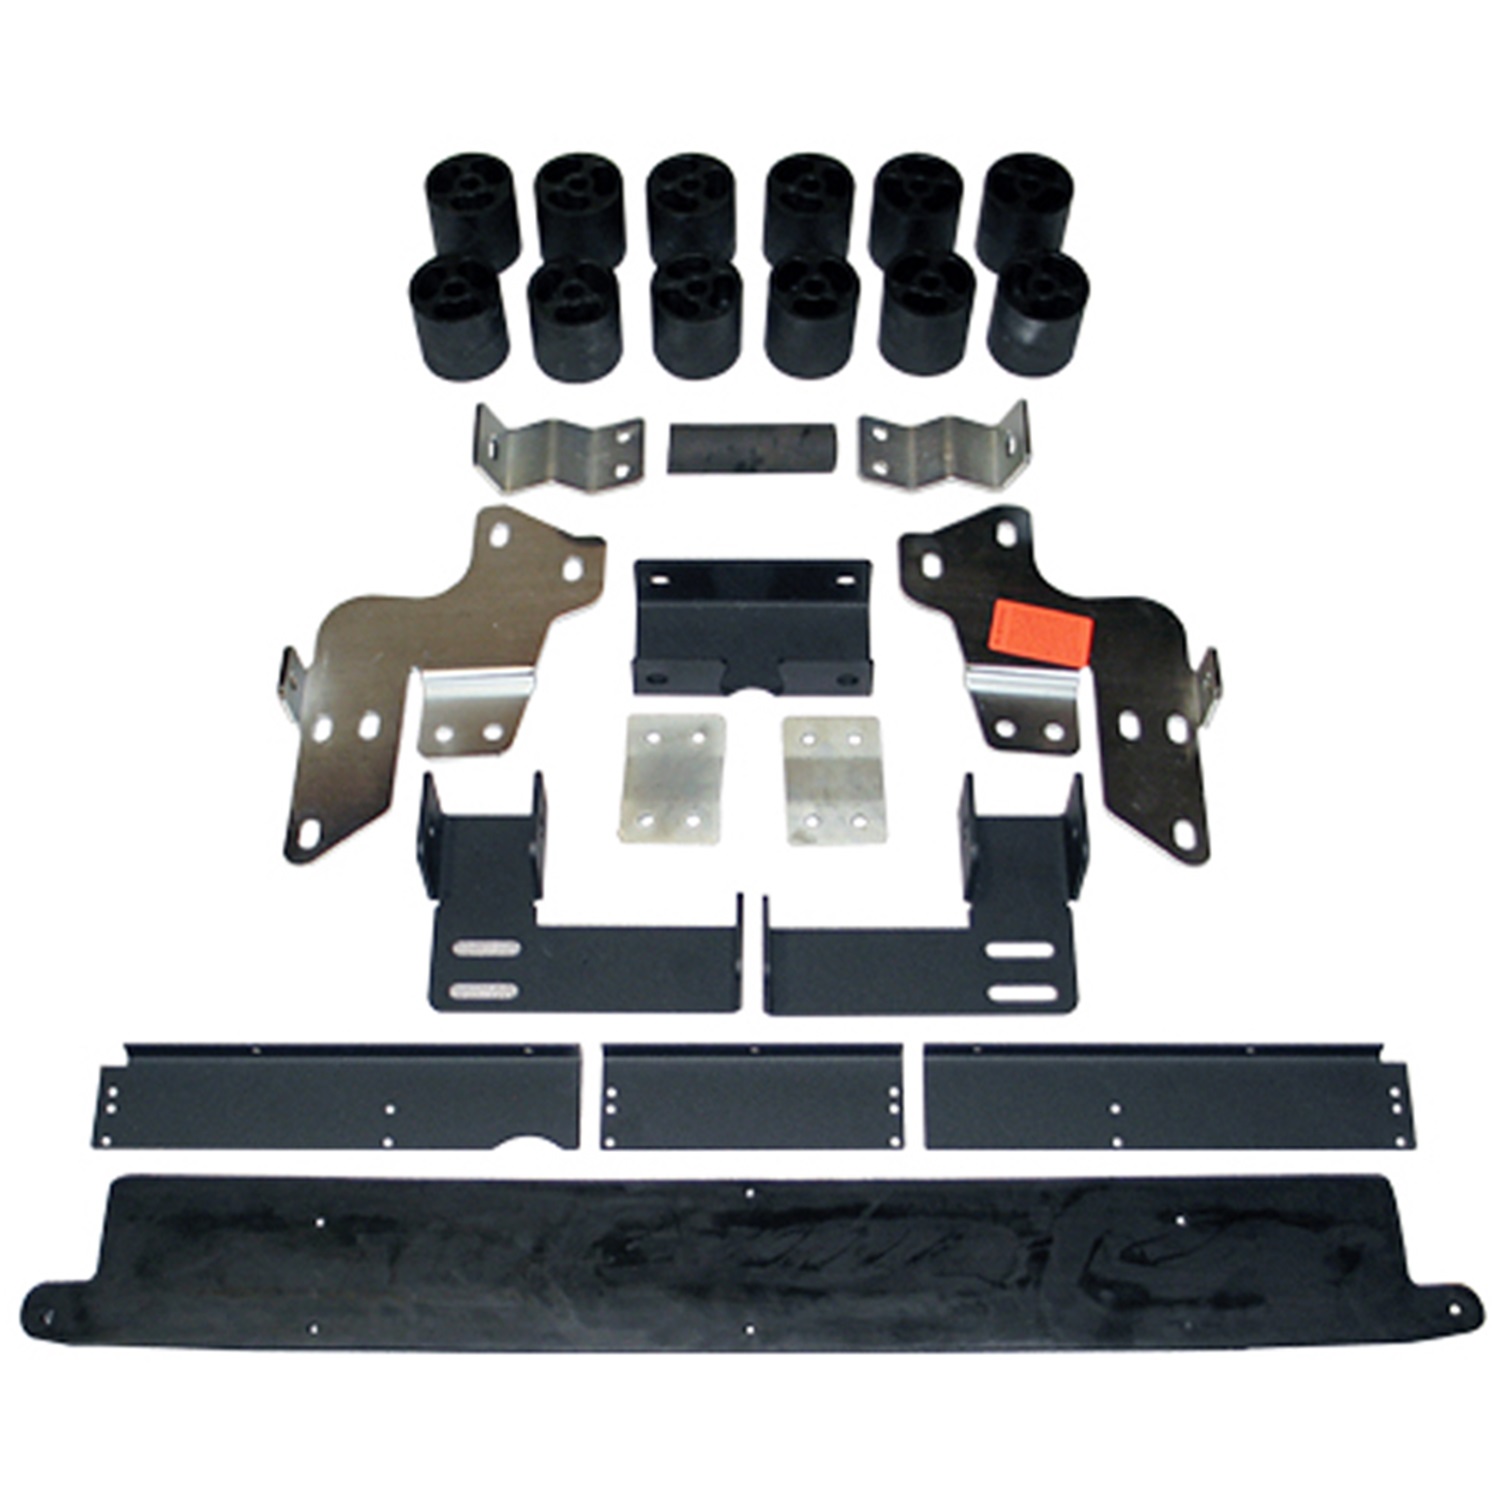 Performance Accessories Performance Accessories 10143 Body Lift Kit Fits 05 Suburban 2500 Yukon XL 2500